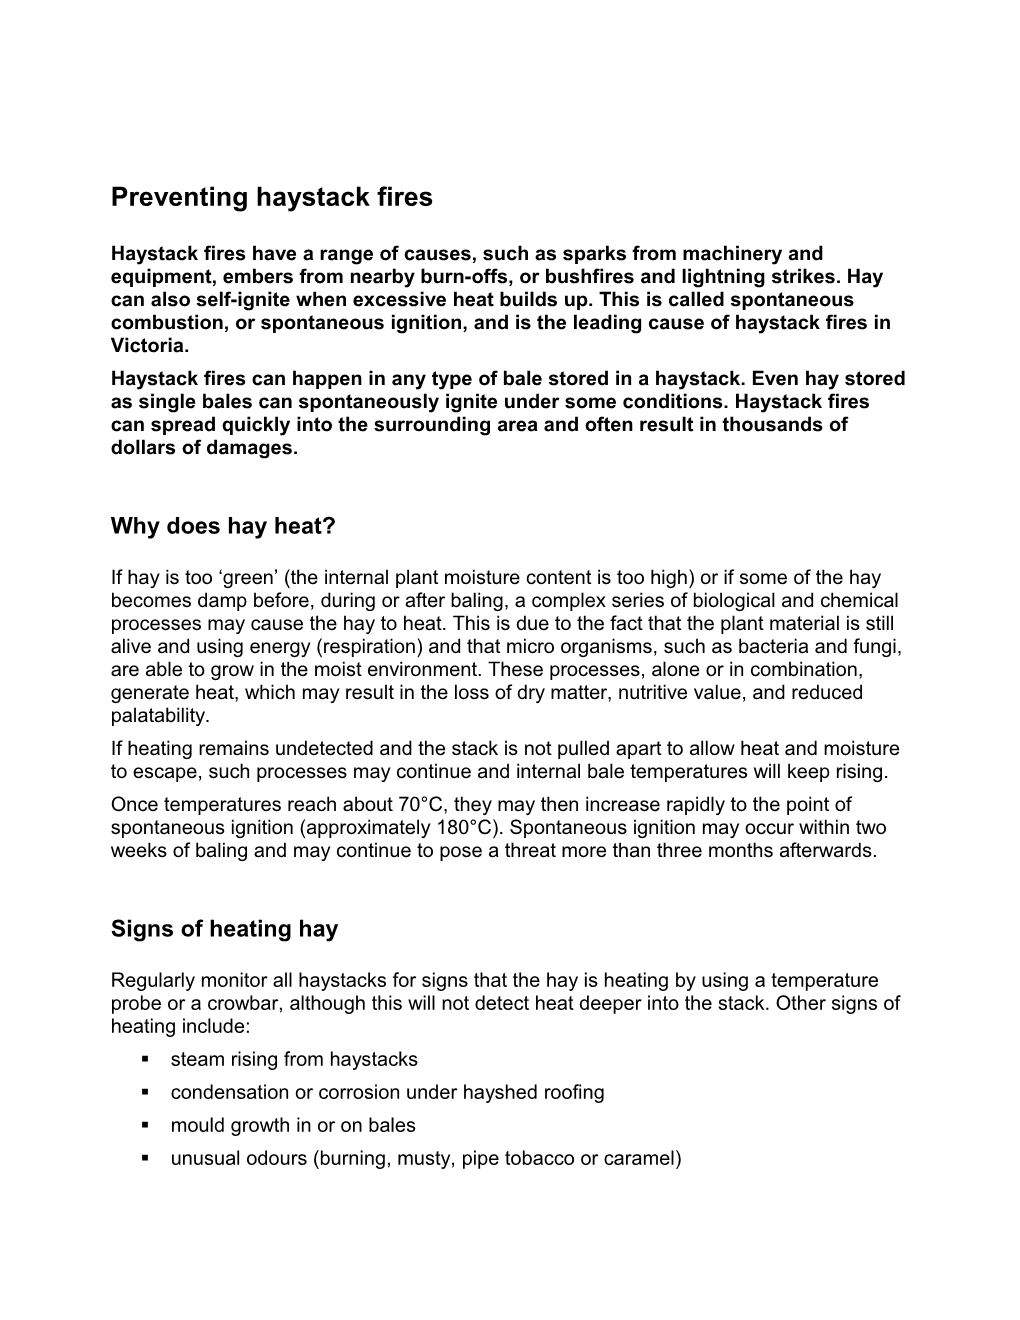 Preventing Haystack Fires